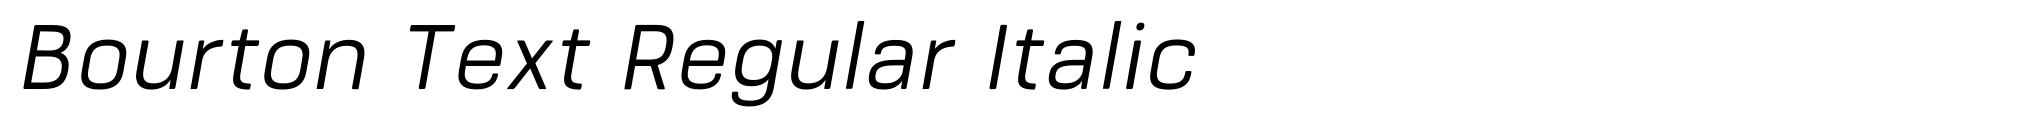 Bourton Text Regular Italic image